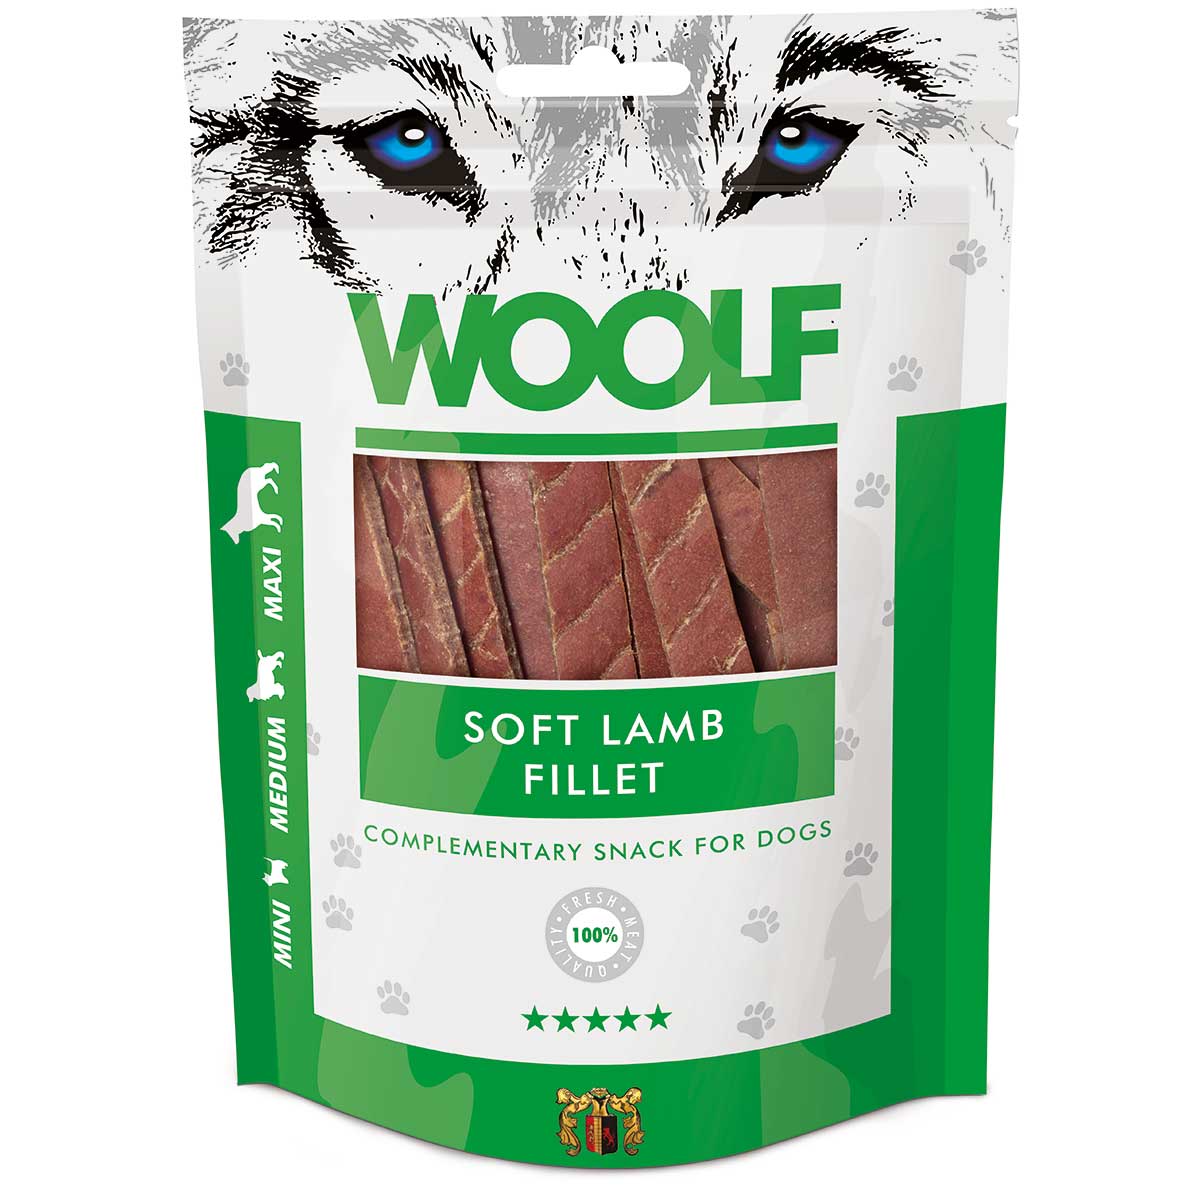 Woolf dog treats strisce di filetto di agnello tenero